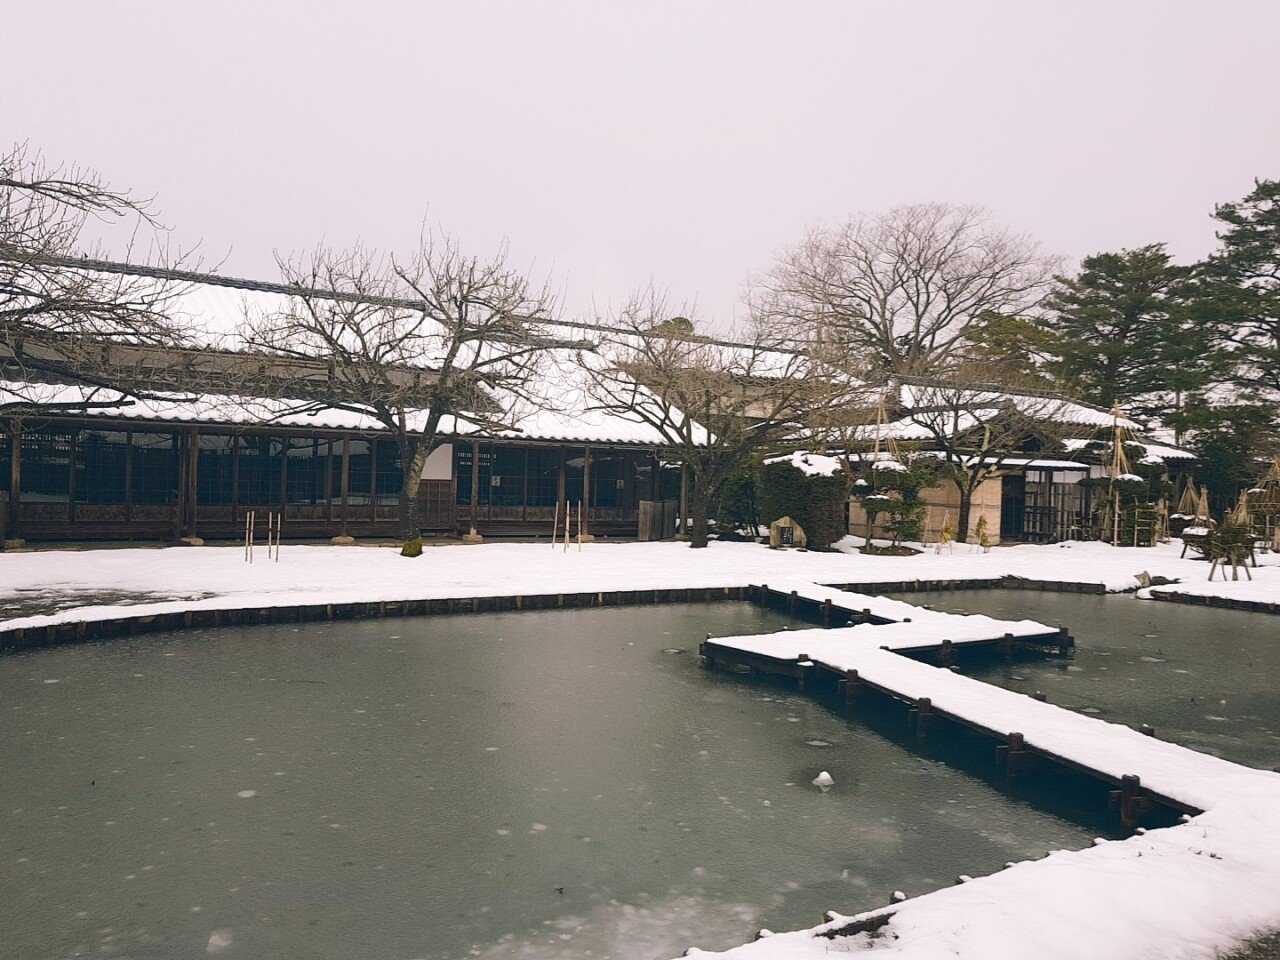 20190129132936.jpg 눈으로 덮인 겨울 니가타&나가노 여행기(1) (스압?)